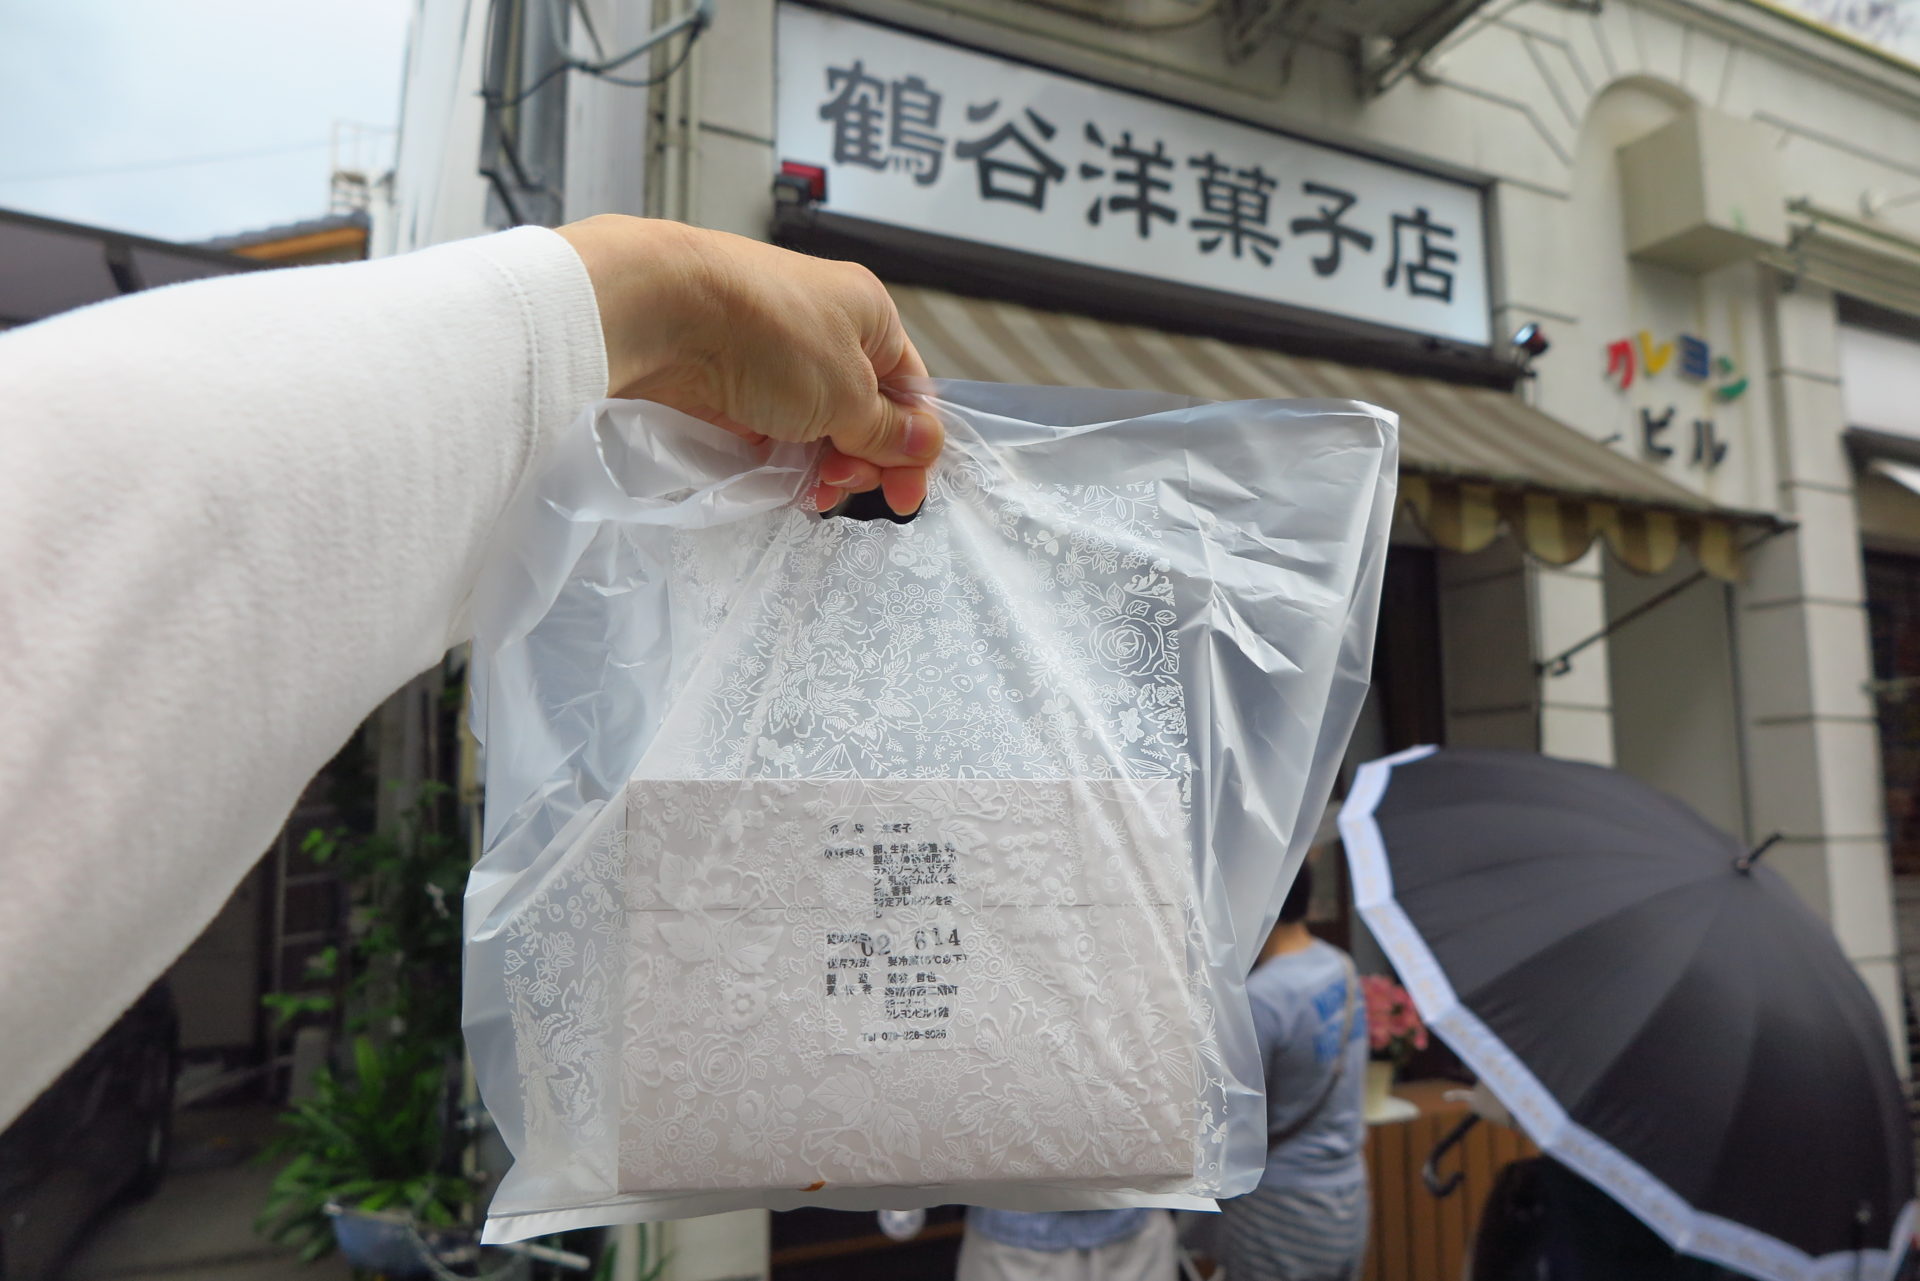 本日閉店の 鶴谷洋菓子店 にケーキを買いにいってきた すると驚きの張り紙がしてあった 姫路市のローカル情報サイト 裏観光情報も